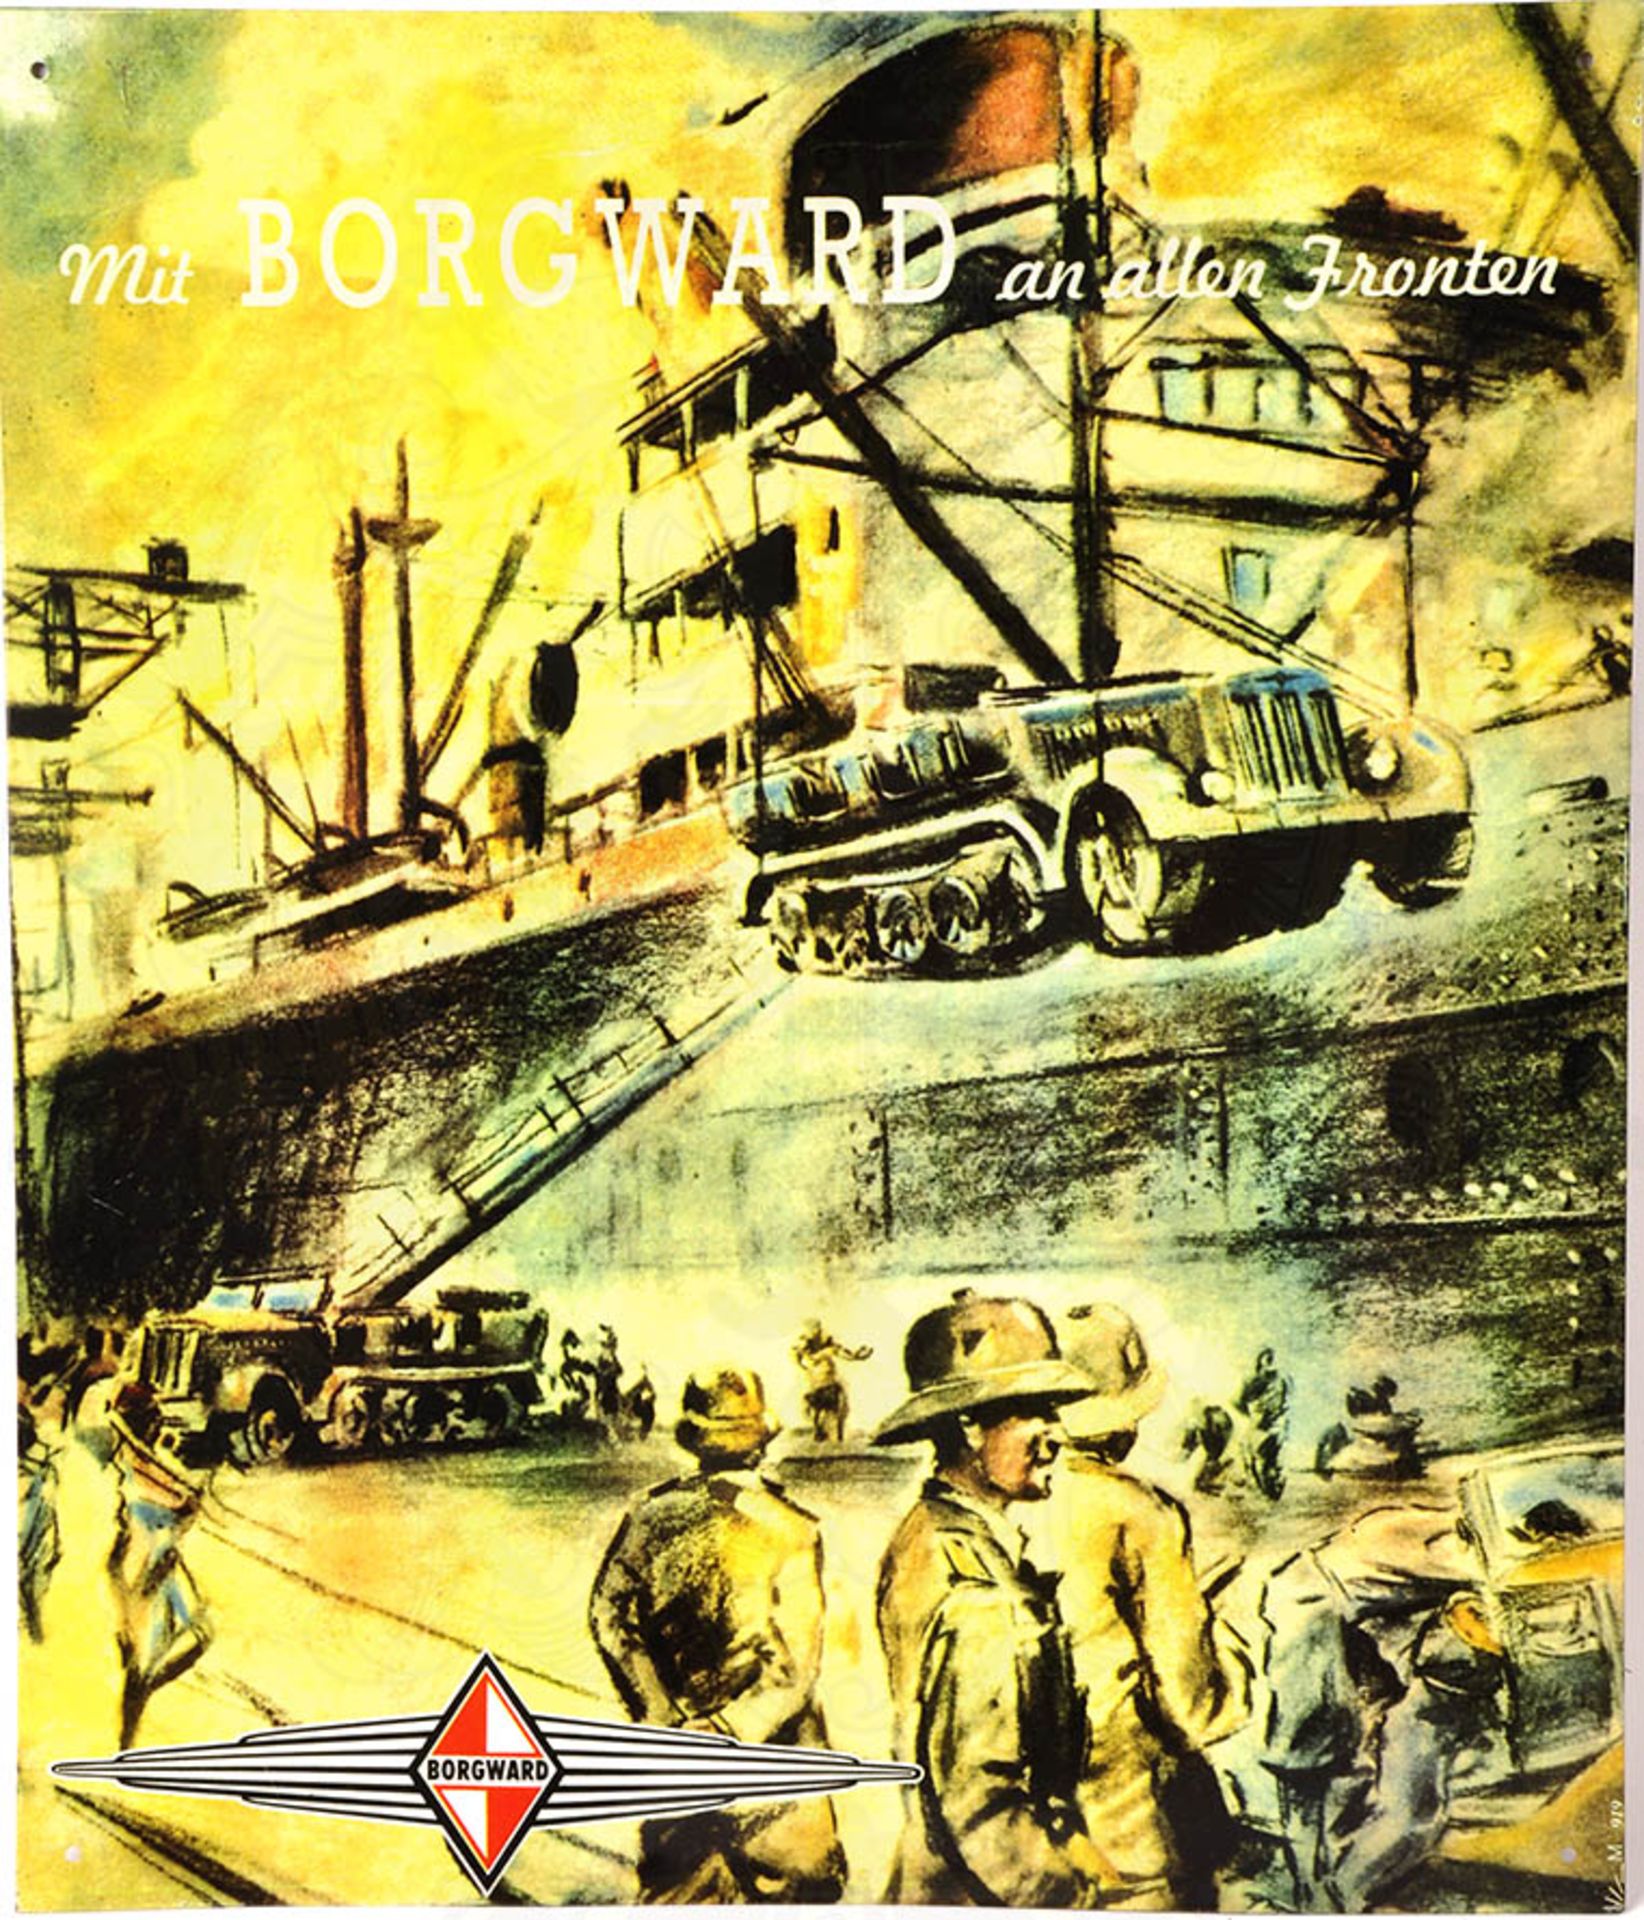 WERBESCHILD BORGWARD, Eisenblech, farb. bedruckt, Szene Schiffverladung v. Zugmaschinen, Afrika-